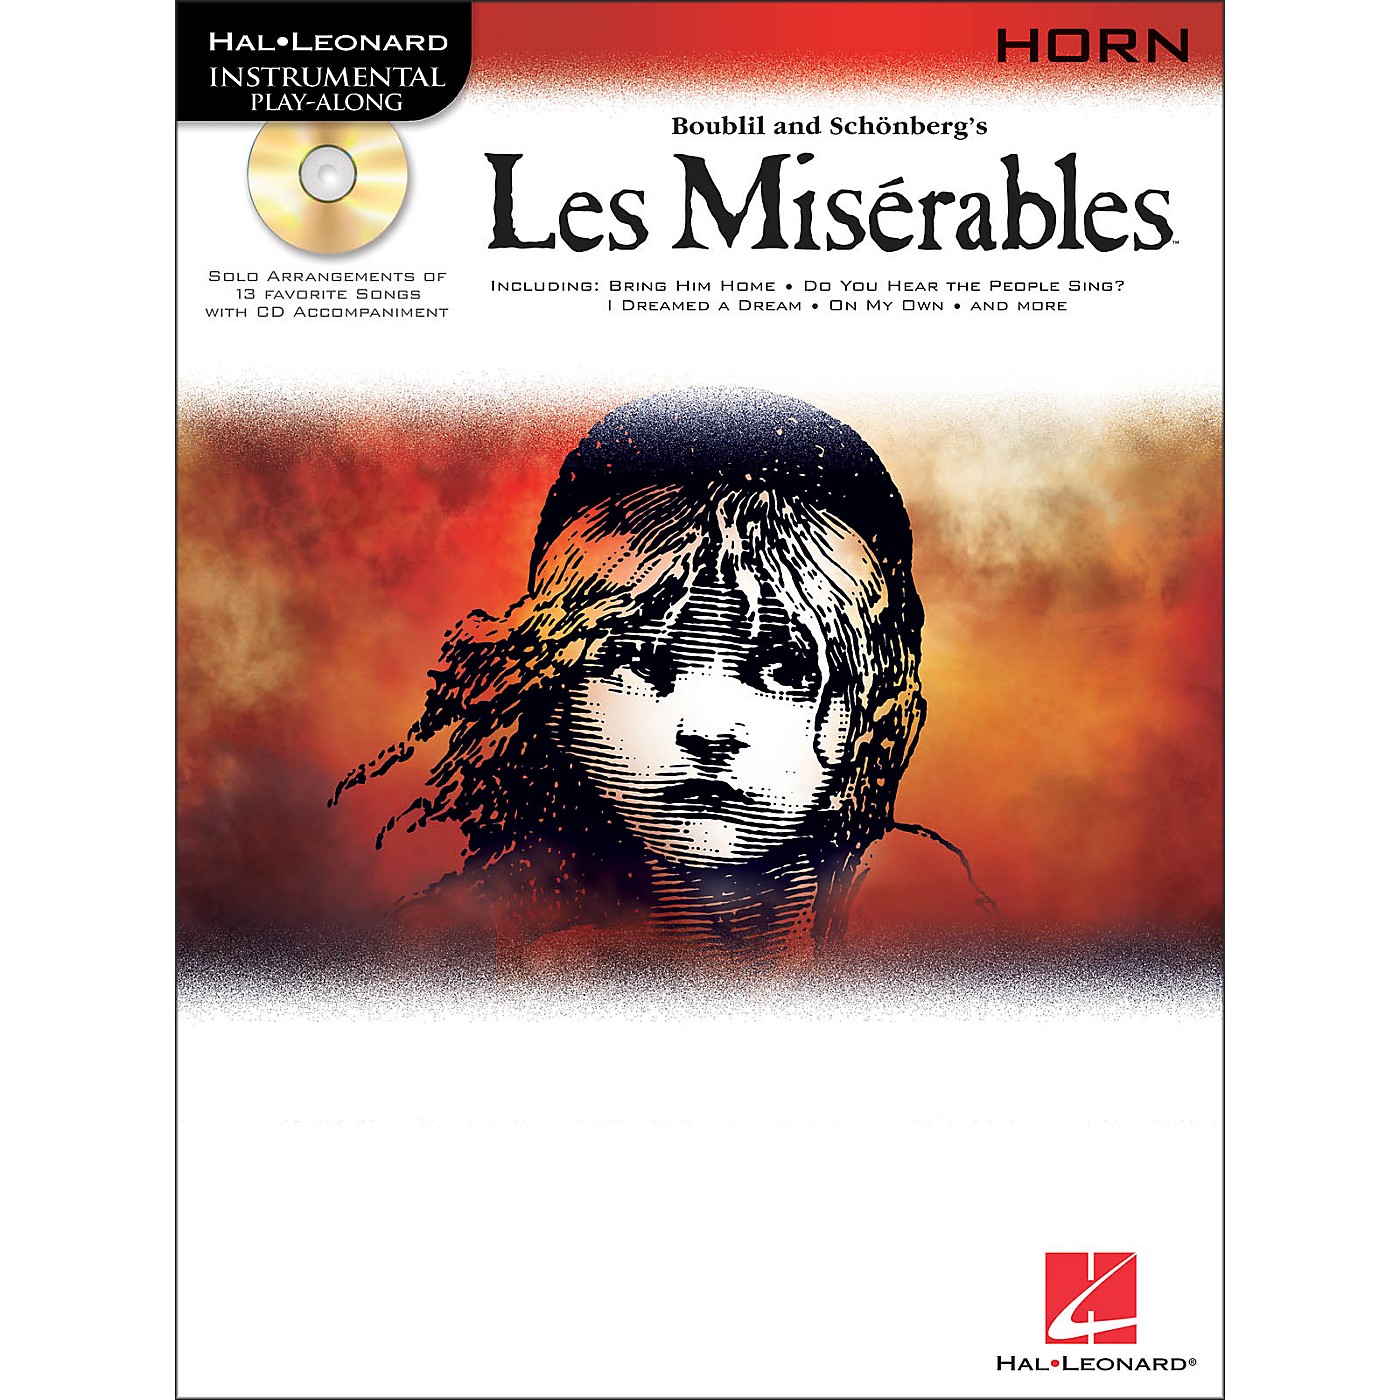 Hal Leonard Les Miserables for French Horn - Instrumental Play-Along Book/CD Pkg thumbnail